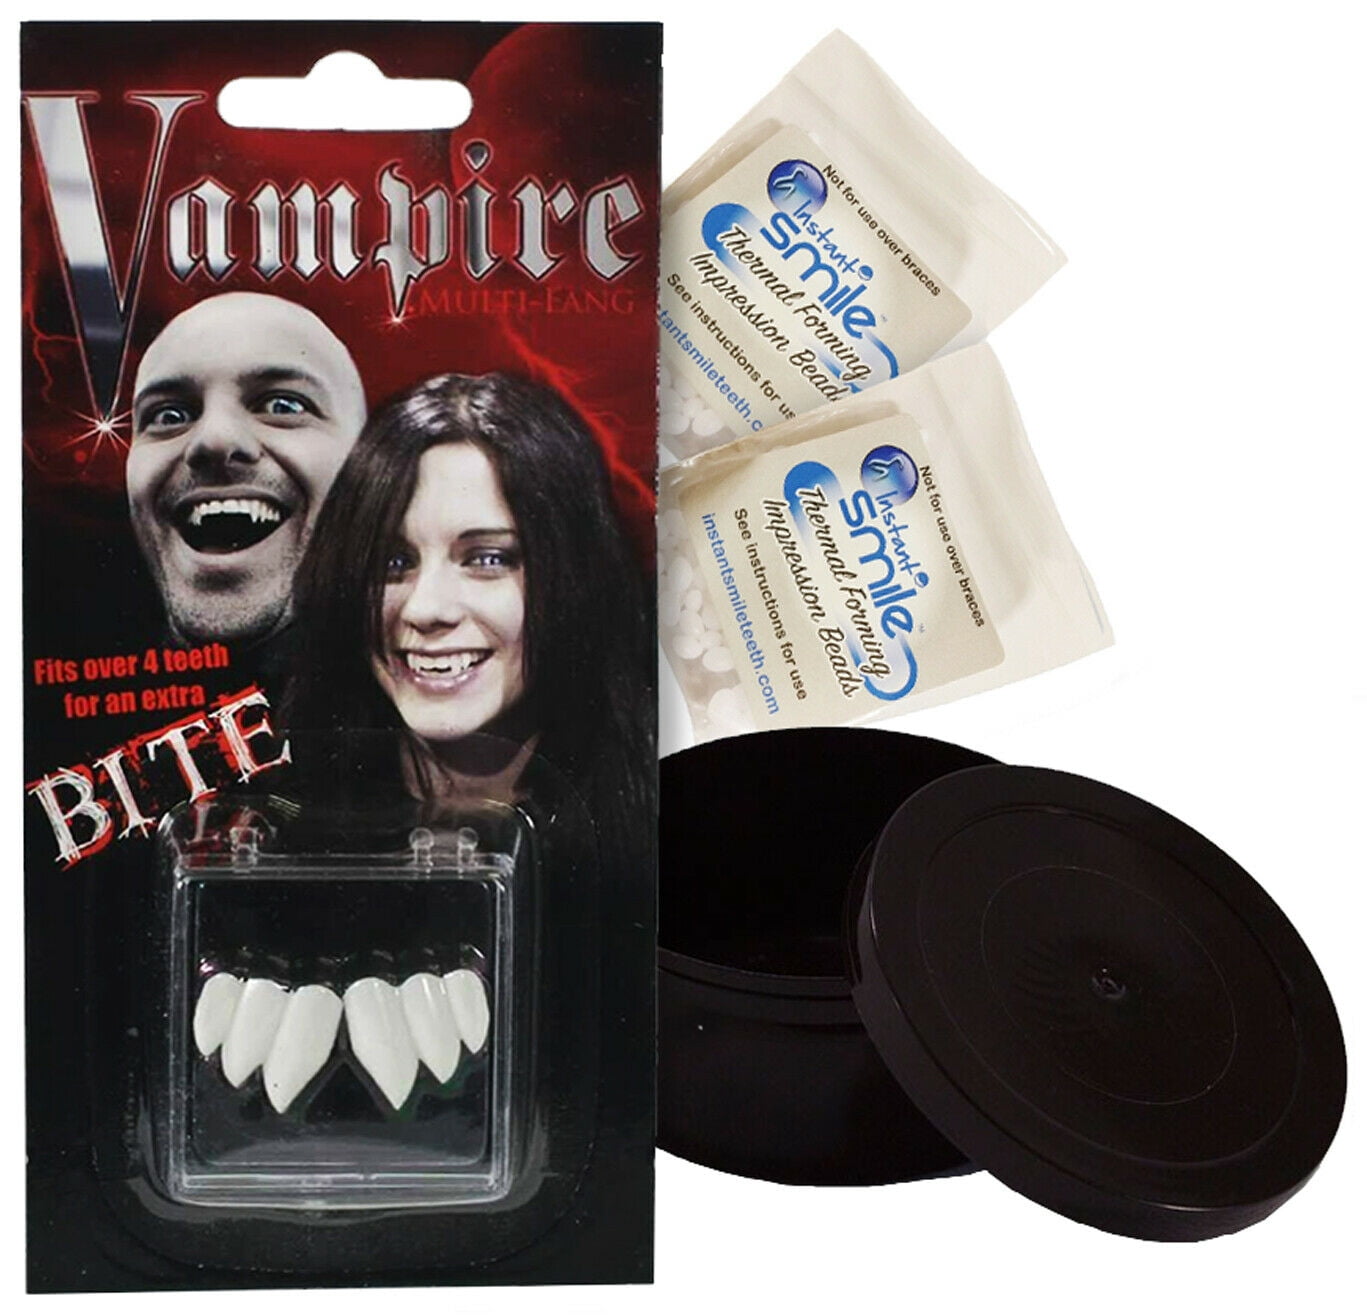 Vampire Vampiress Count Dracula Latex Bite Costume Theatrical Kiss Scar  Makeup